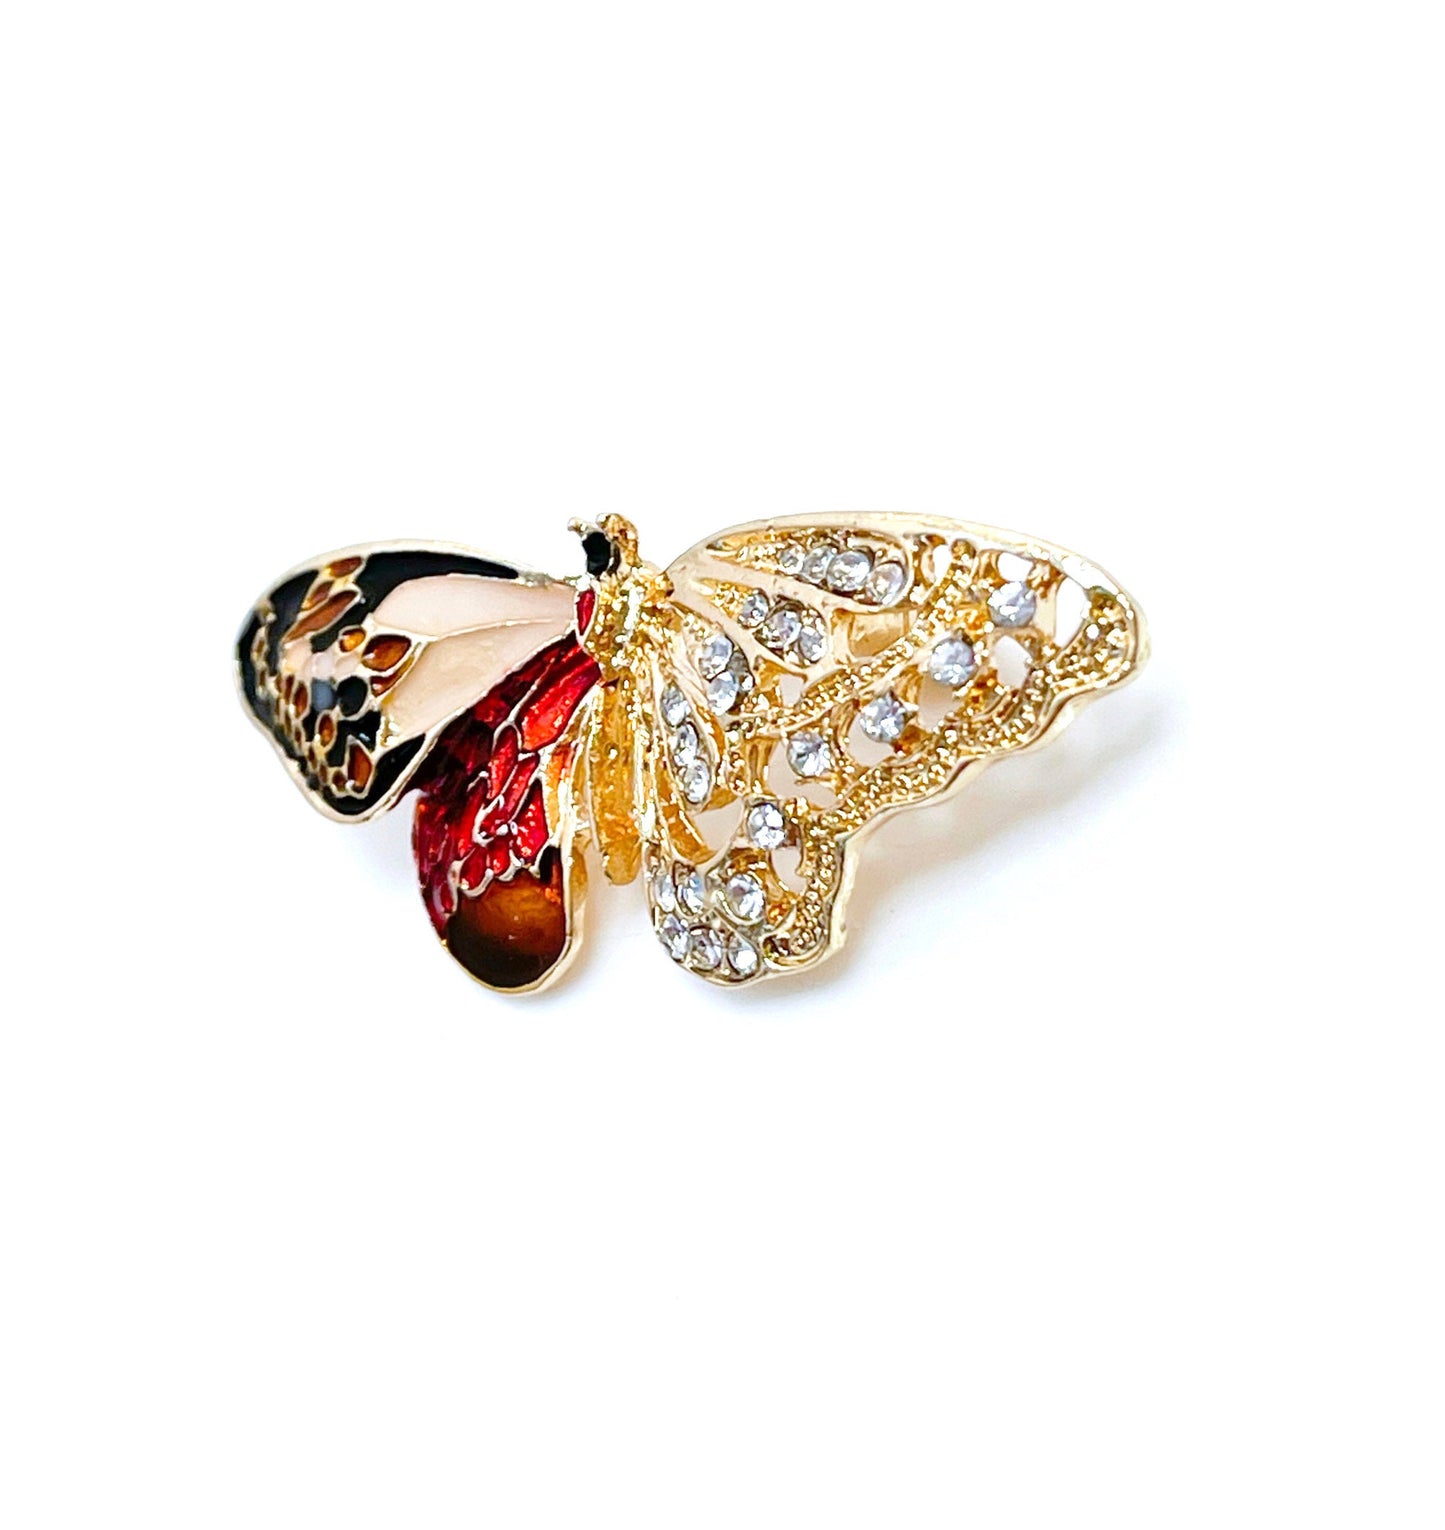 Pretty Butterfly Brooch | Vintage Crystal Enamel Brooch